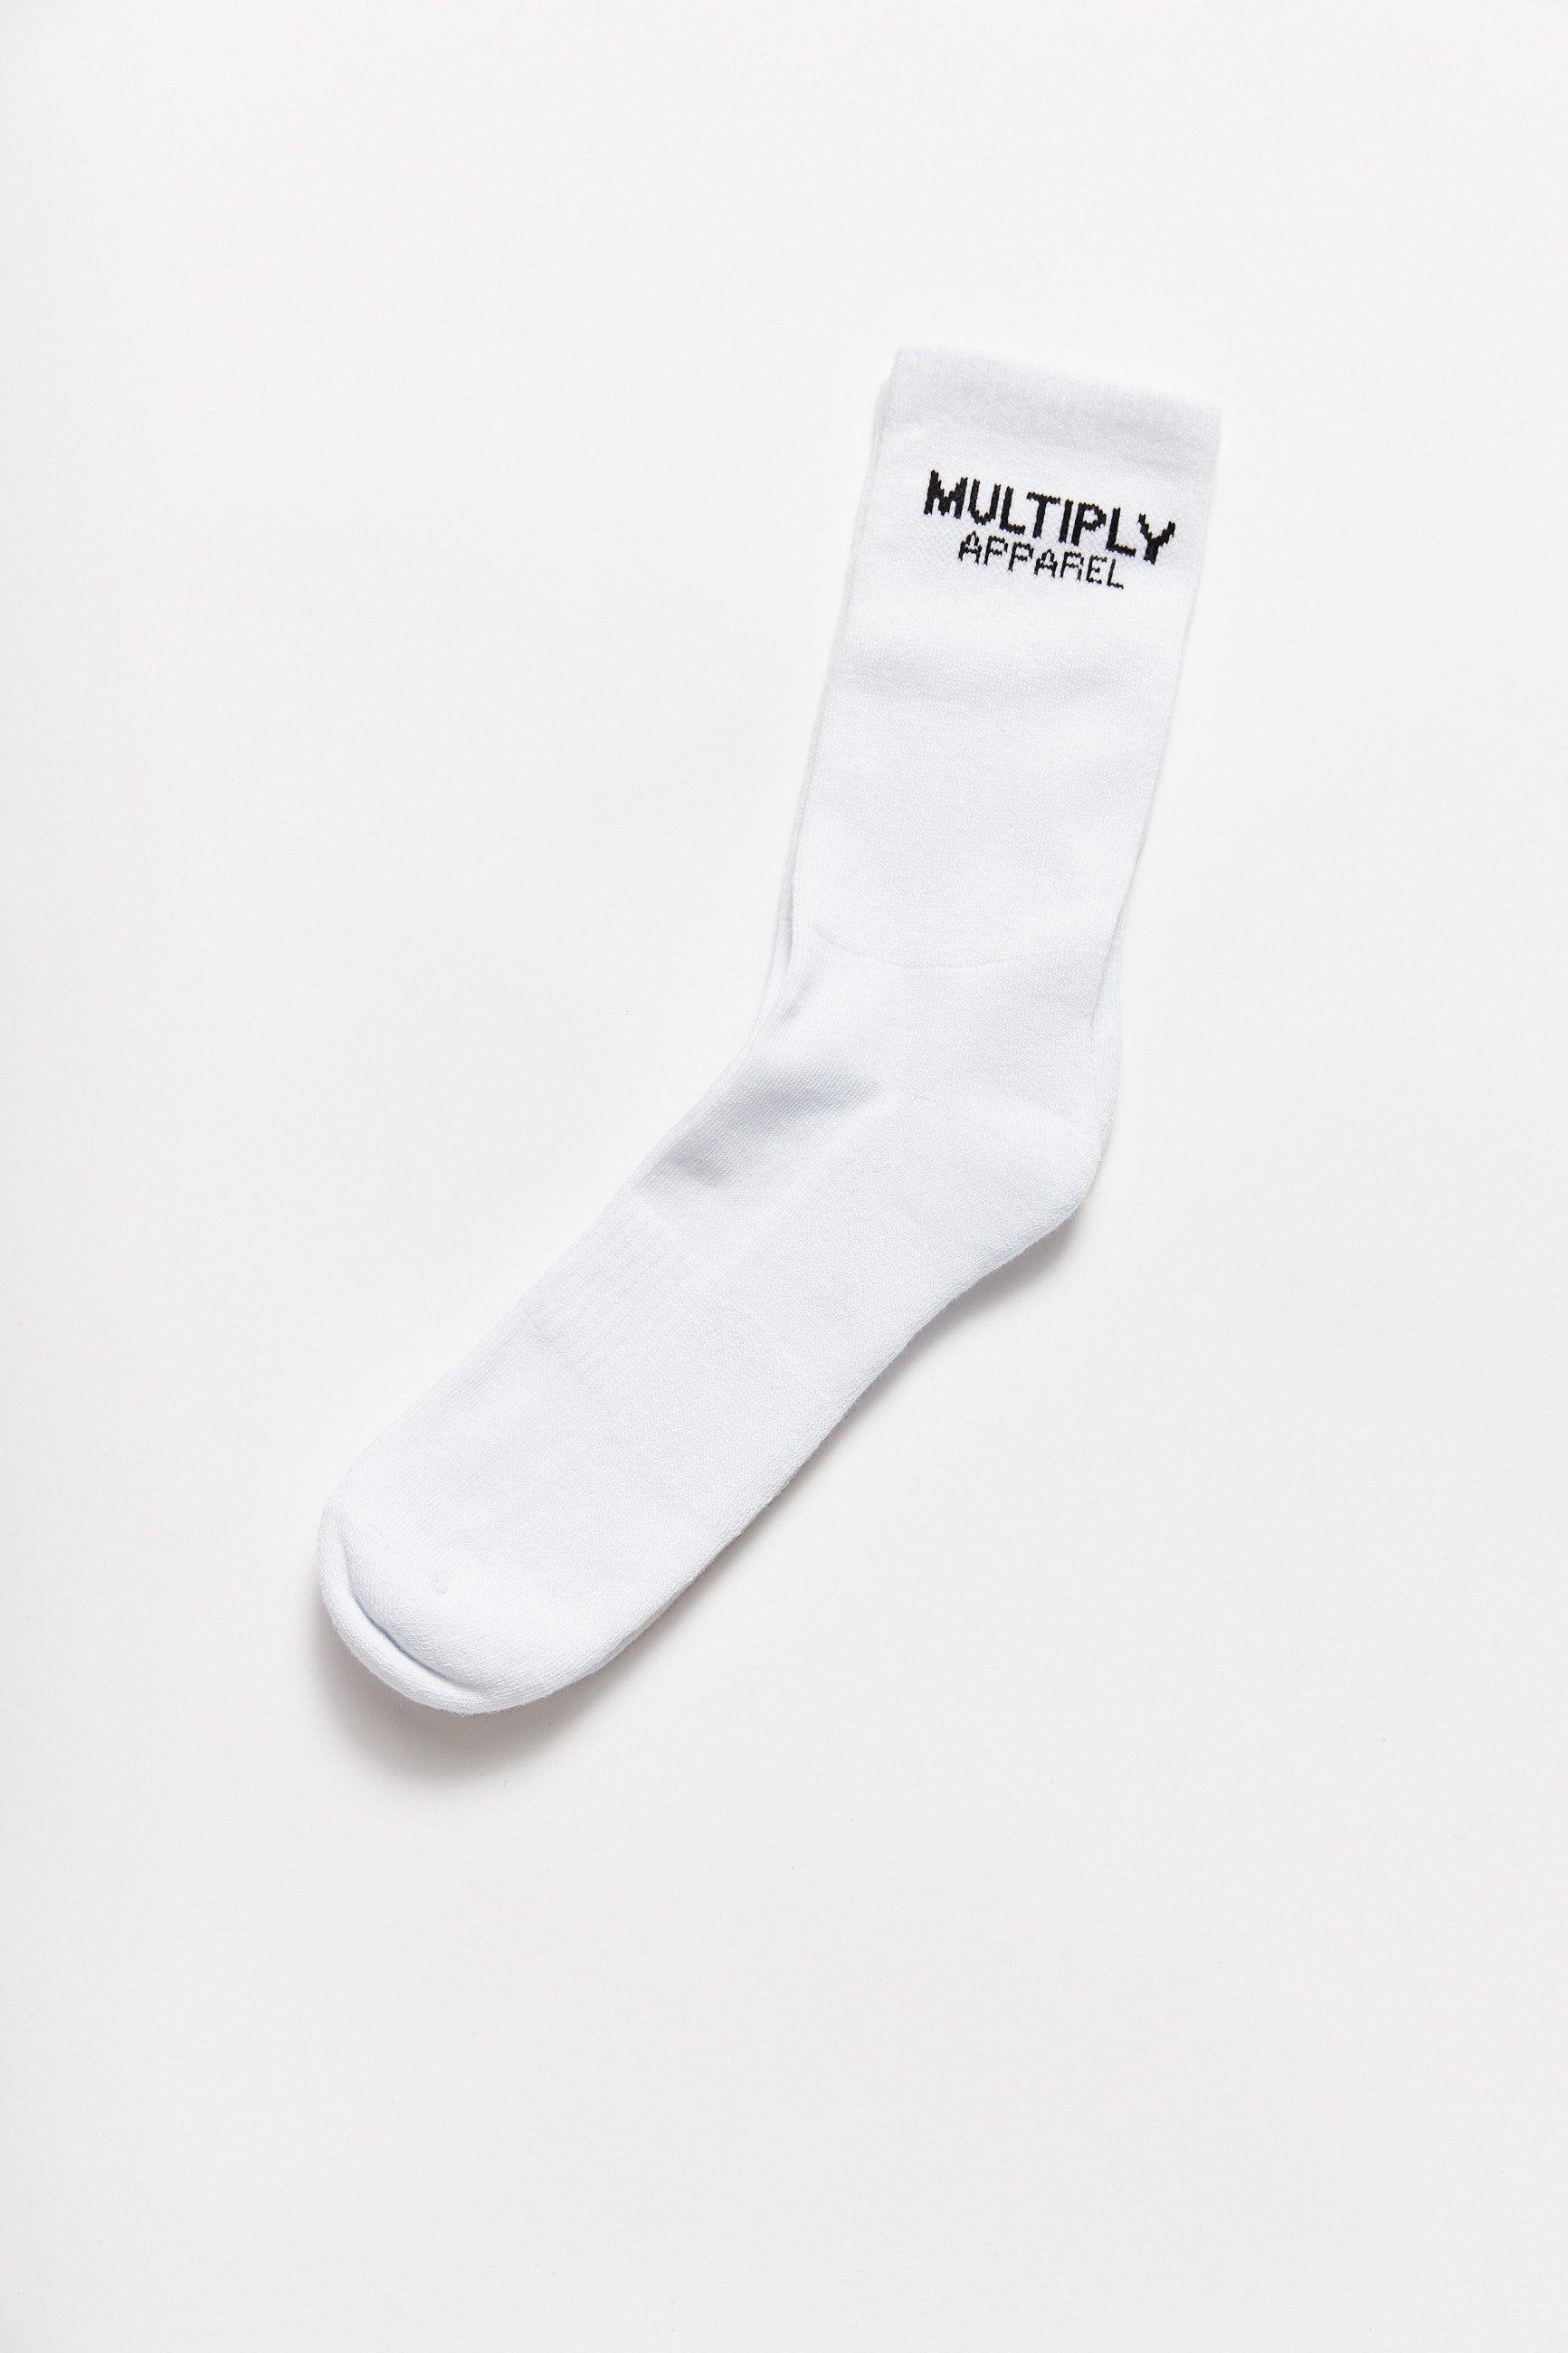 Socken "MULTIPLY" 3er Pack